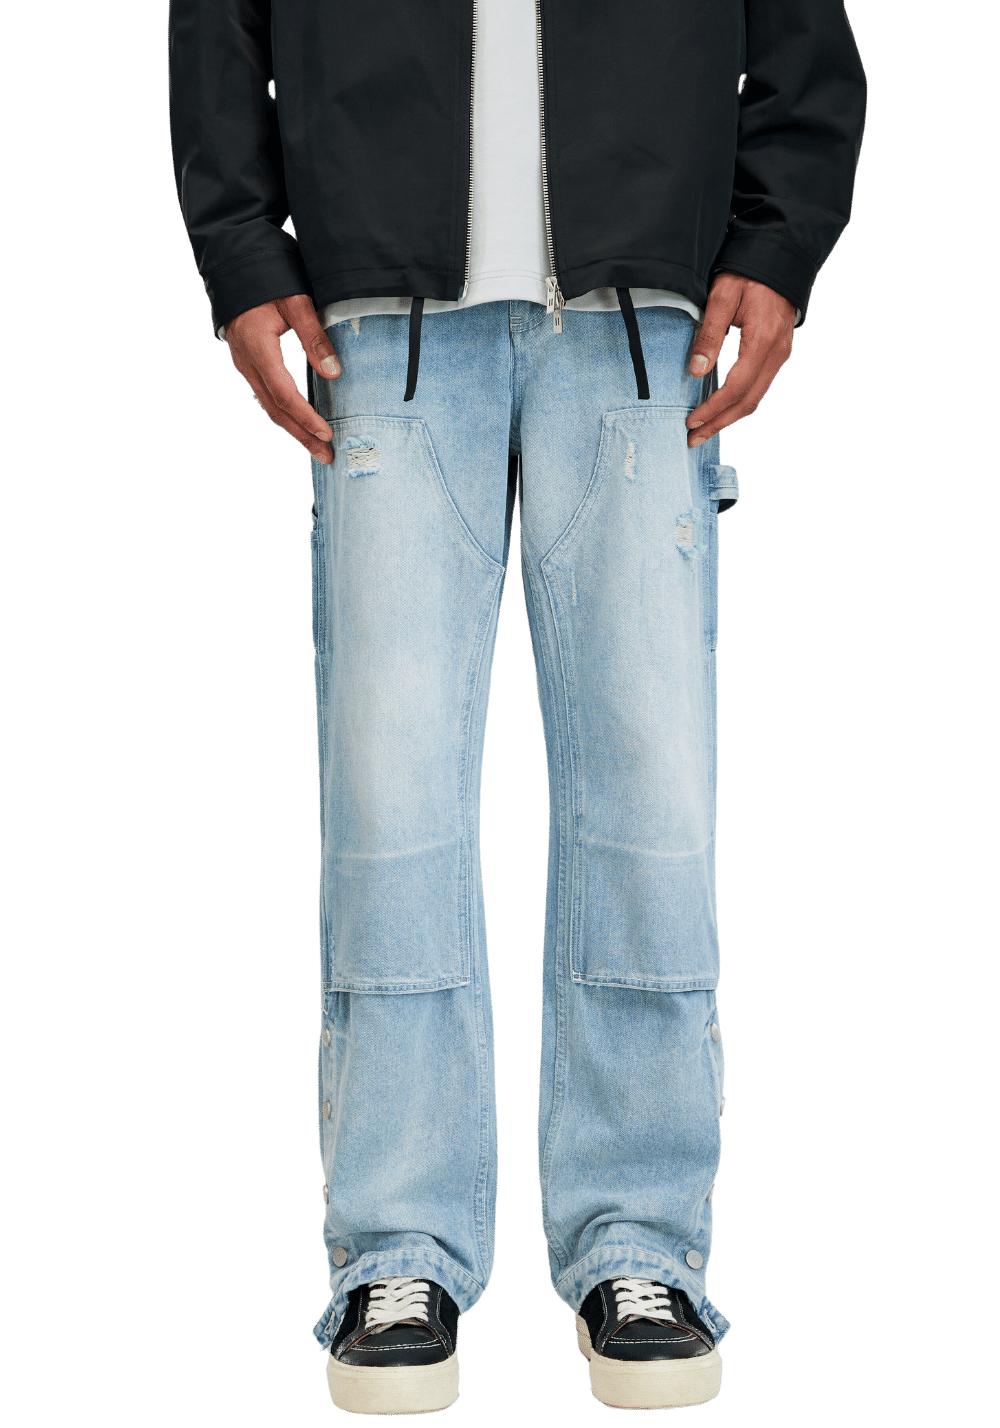 Washed Carpenter Jeans - PSYLOS 1, Washed Carpenter Jeans, Pants, Boneless, PSYLOS 1